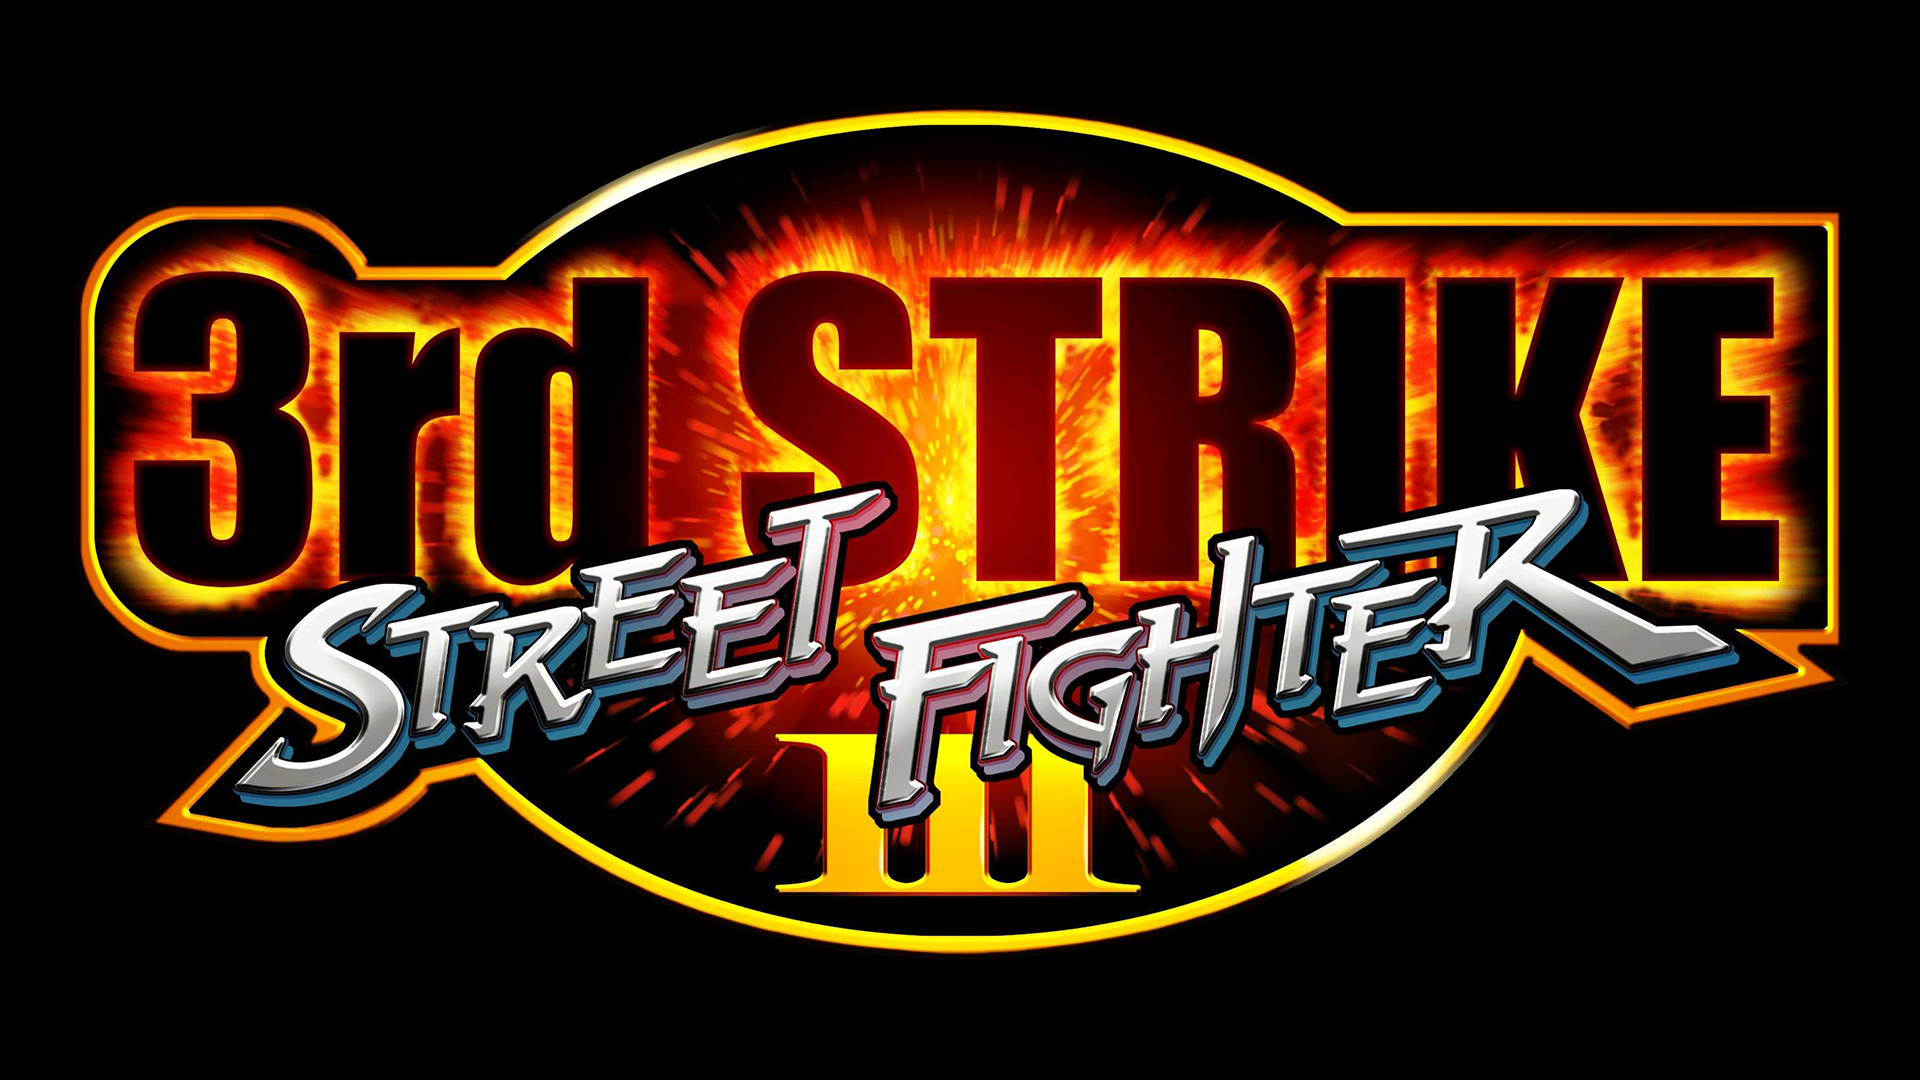 Street Fighter III: 3rd Strike Logo